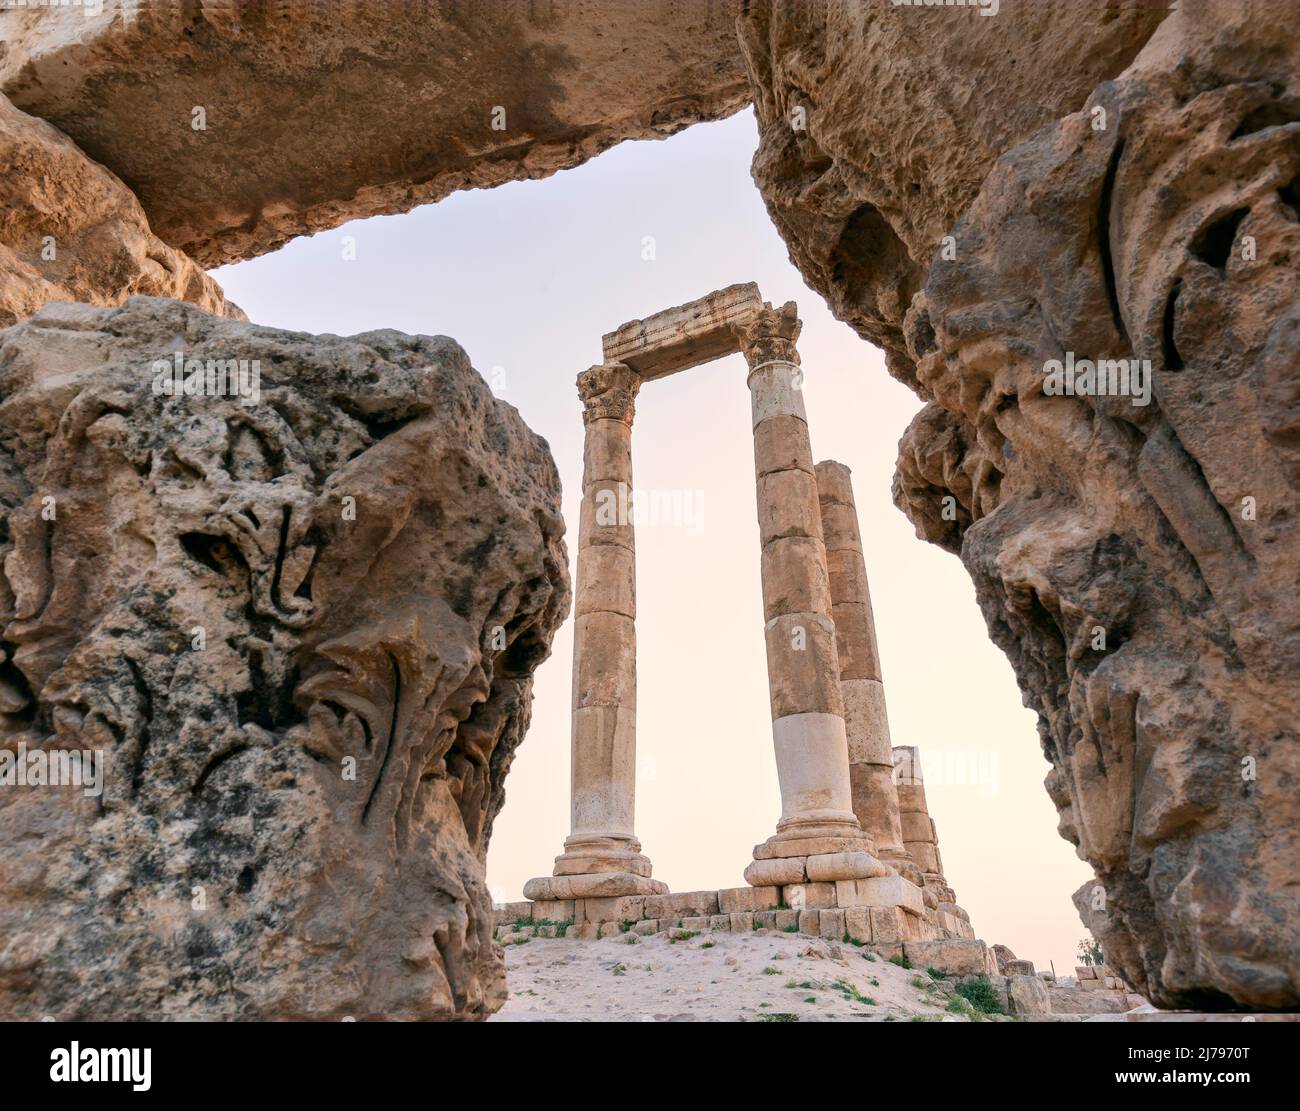 Temple of Hercules of the Amman Citadel complex (Jabal al-Qal'a), Amman, Jordan Stock Photo